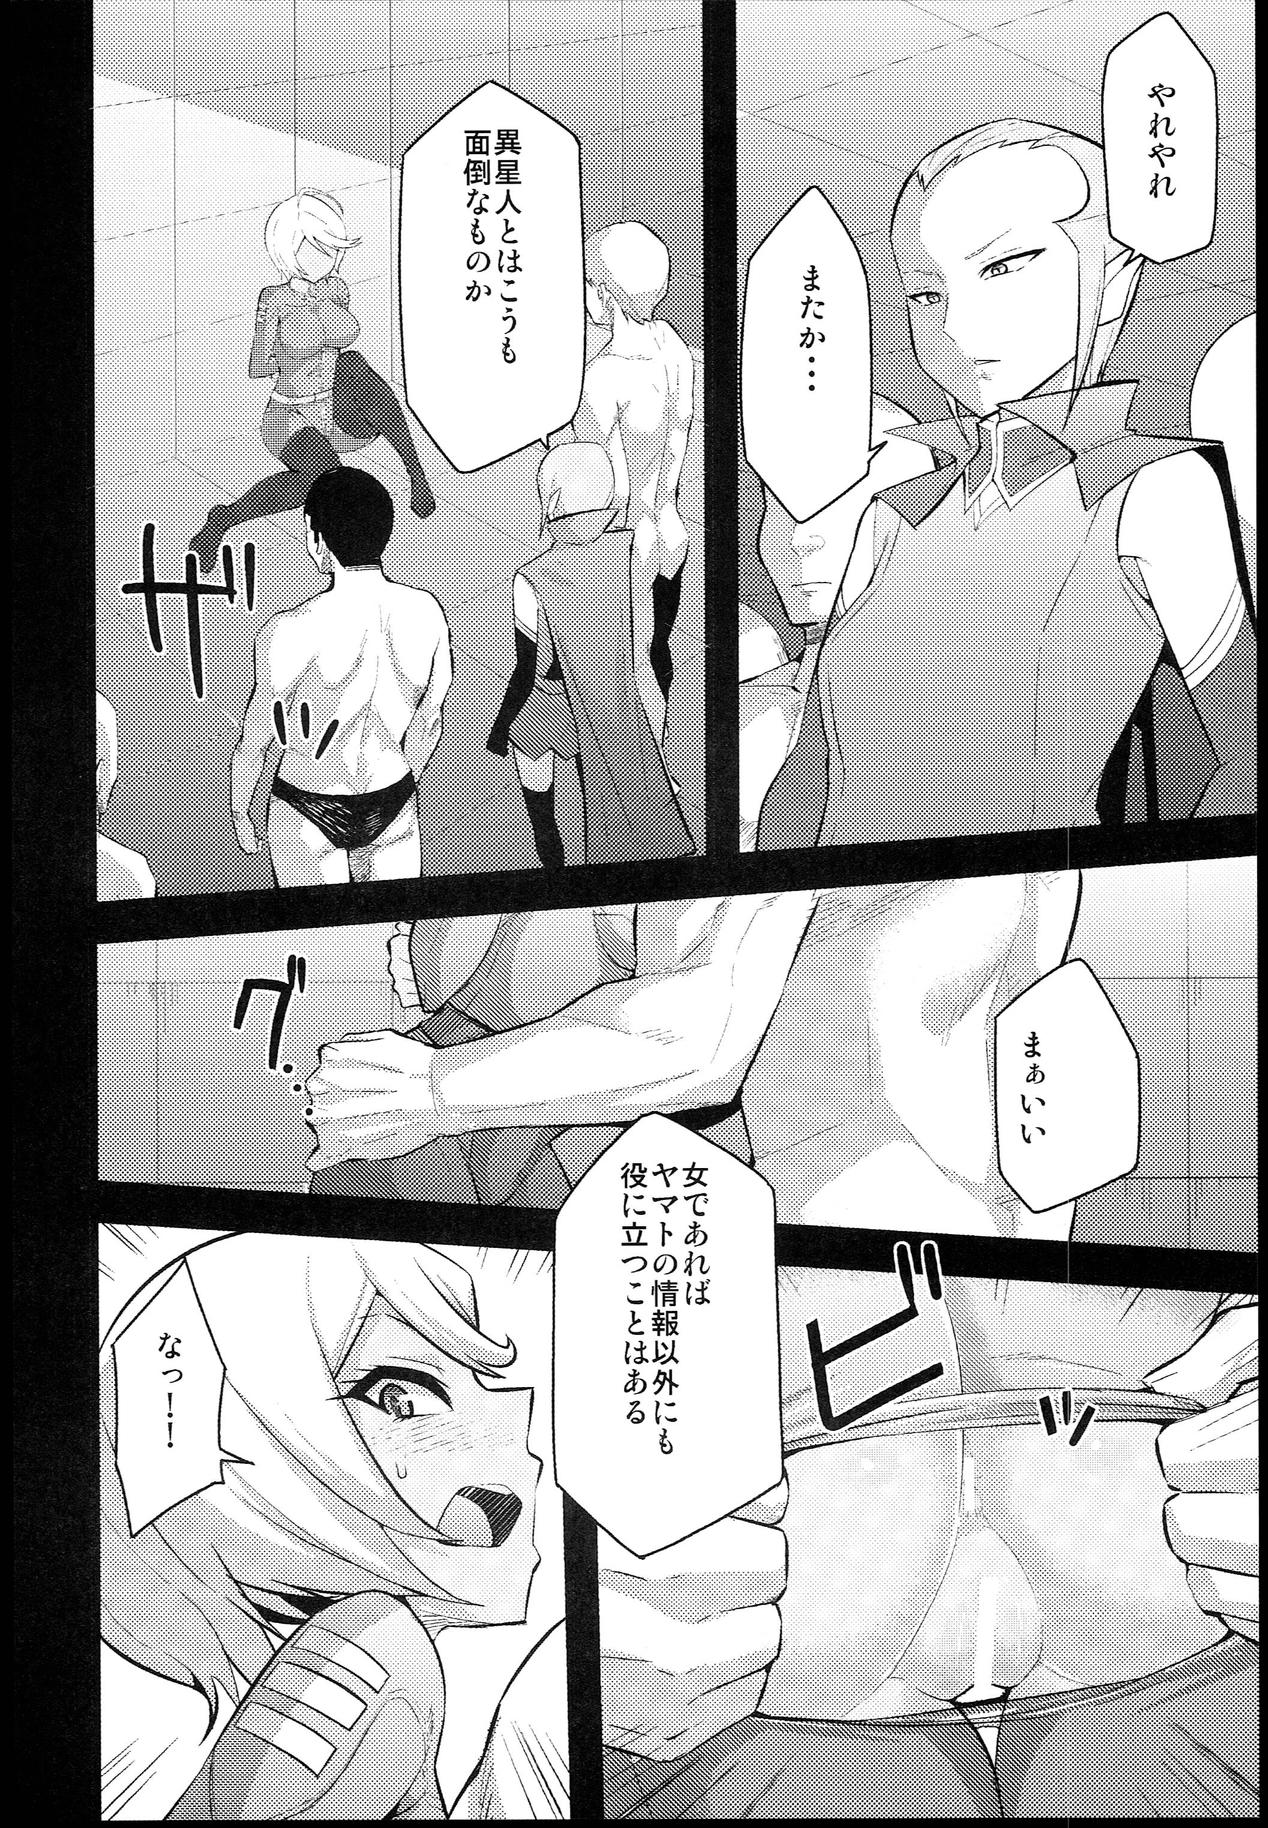 Humiliation Kassyoku Pilot - Space battleship yamato Wam - Page 6